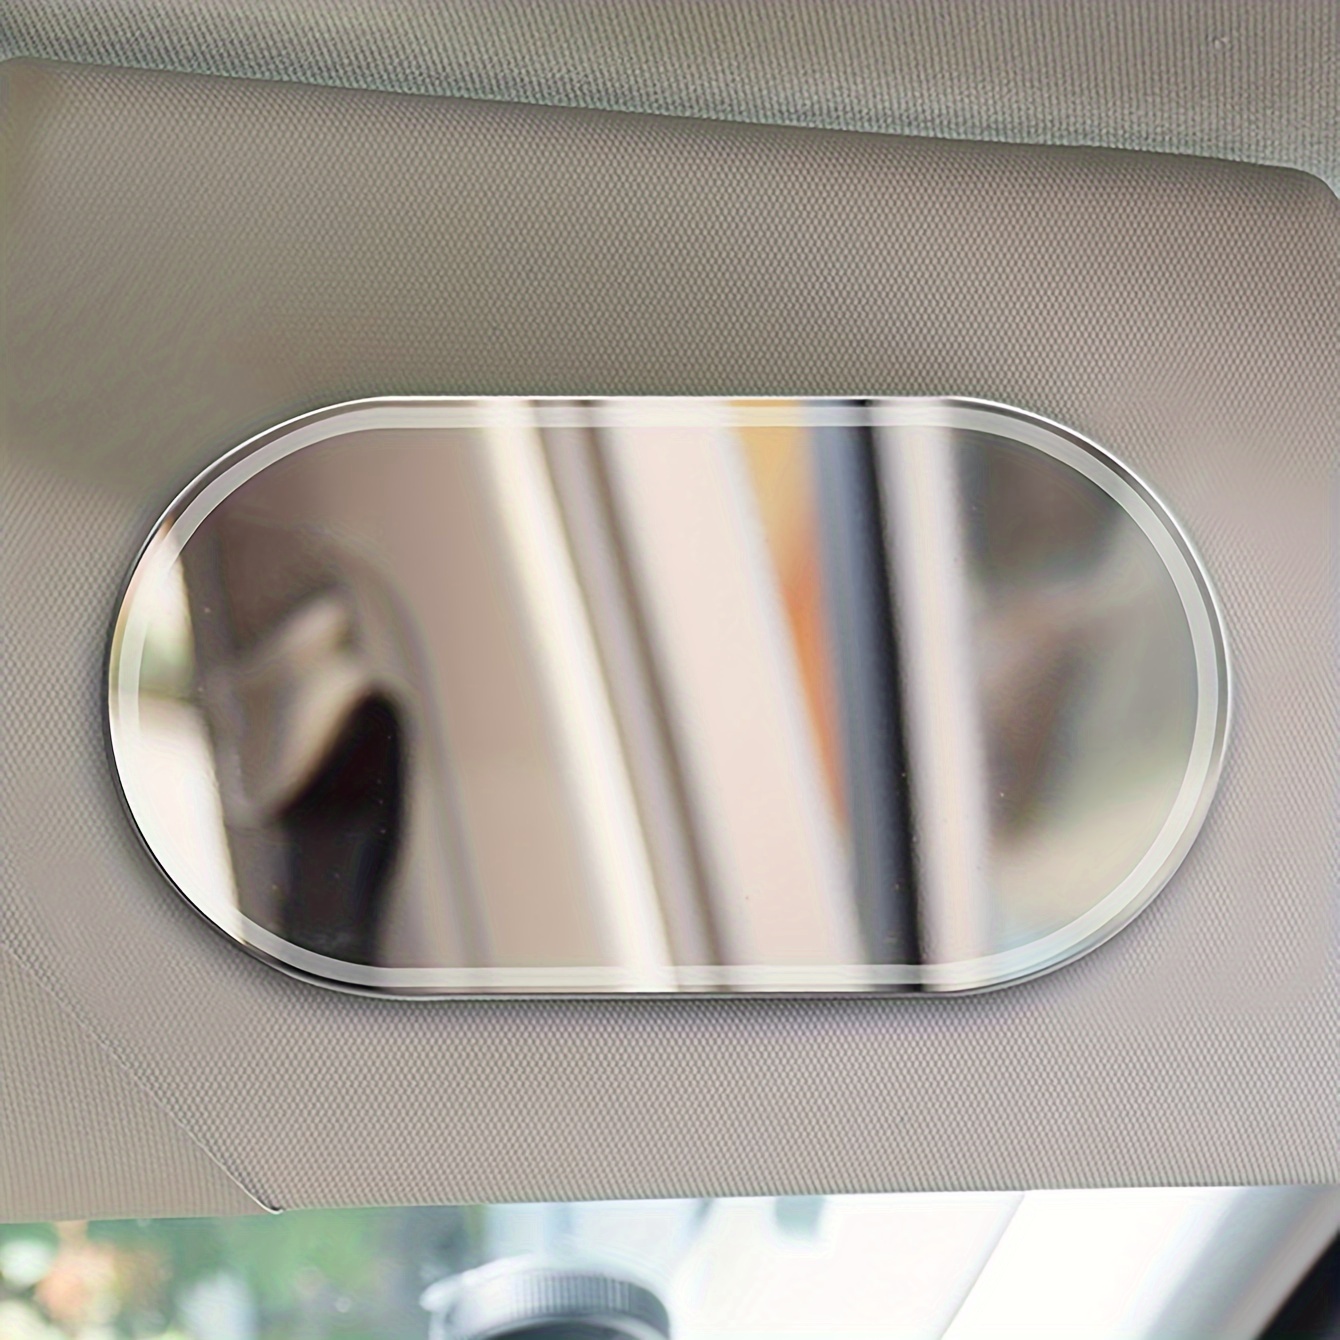 Auto Sonnenblende Spiegel, Fahrzeug Kosmetik Make-up Spiegel, Auto  Selbstklebend Spiegel für Auto LKW SUV(Oval)